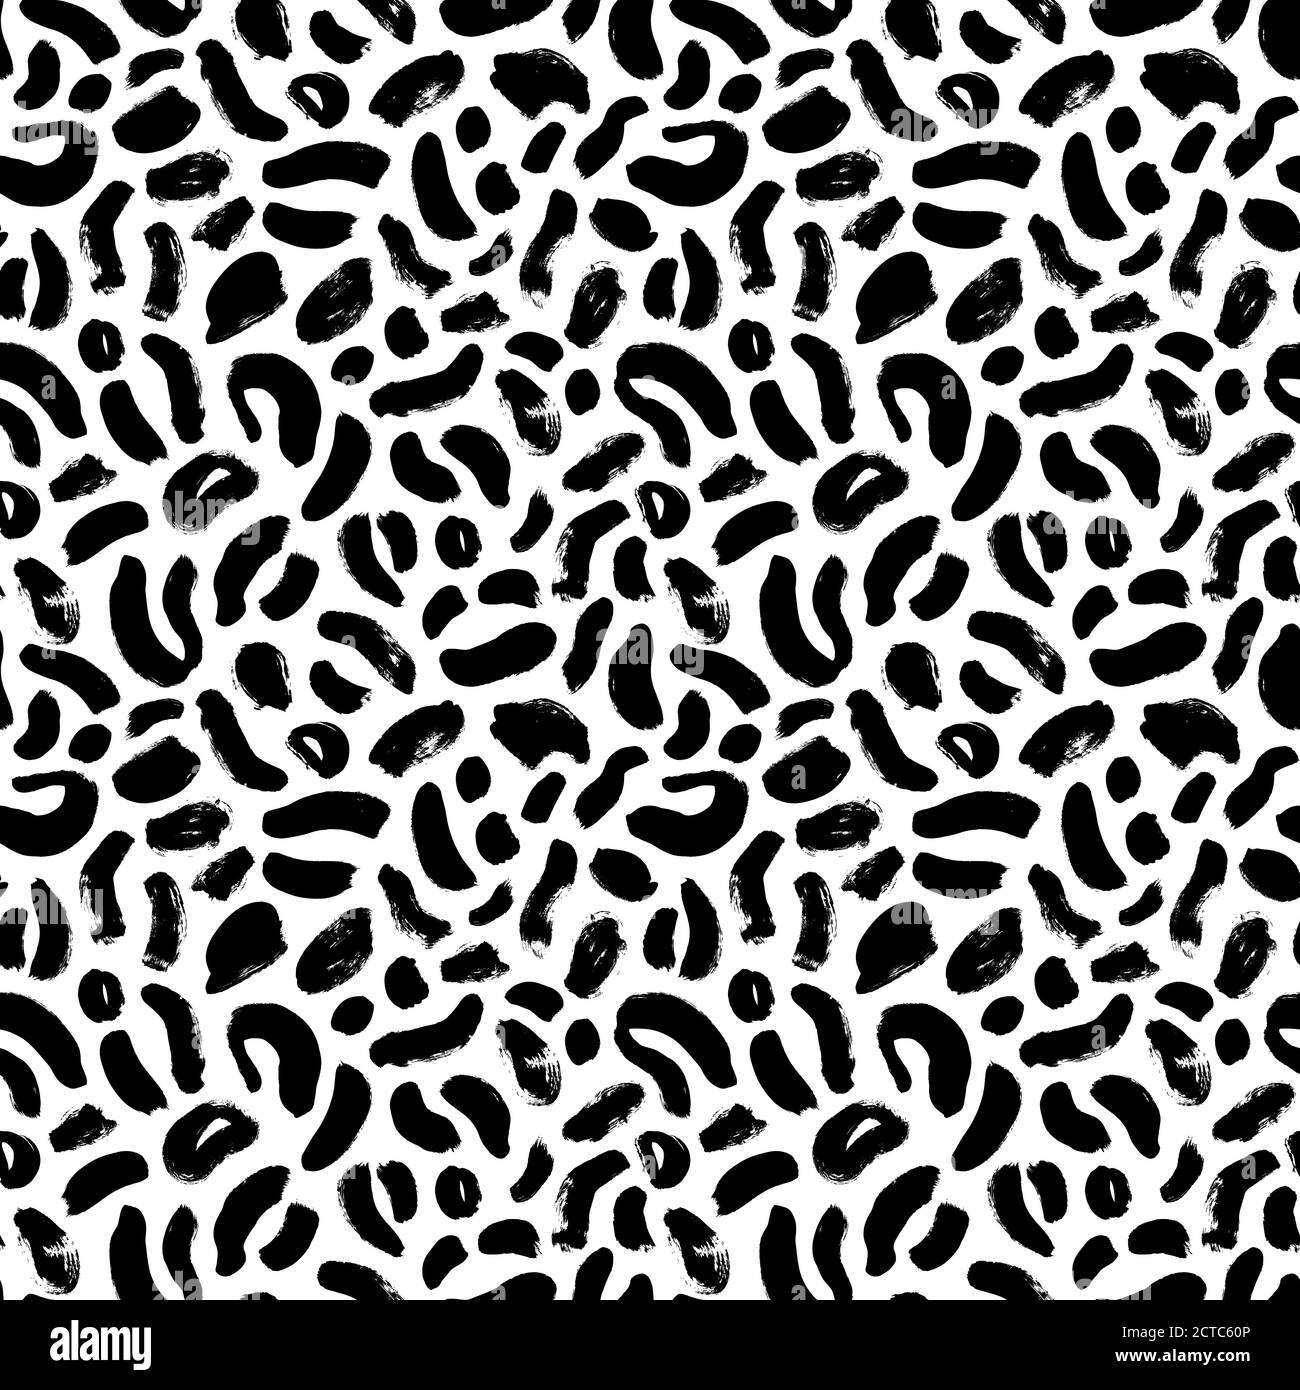 Nahtloses Muster in Tierhaut-Leopardenmuster. Stock Vektor